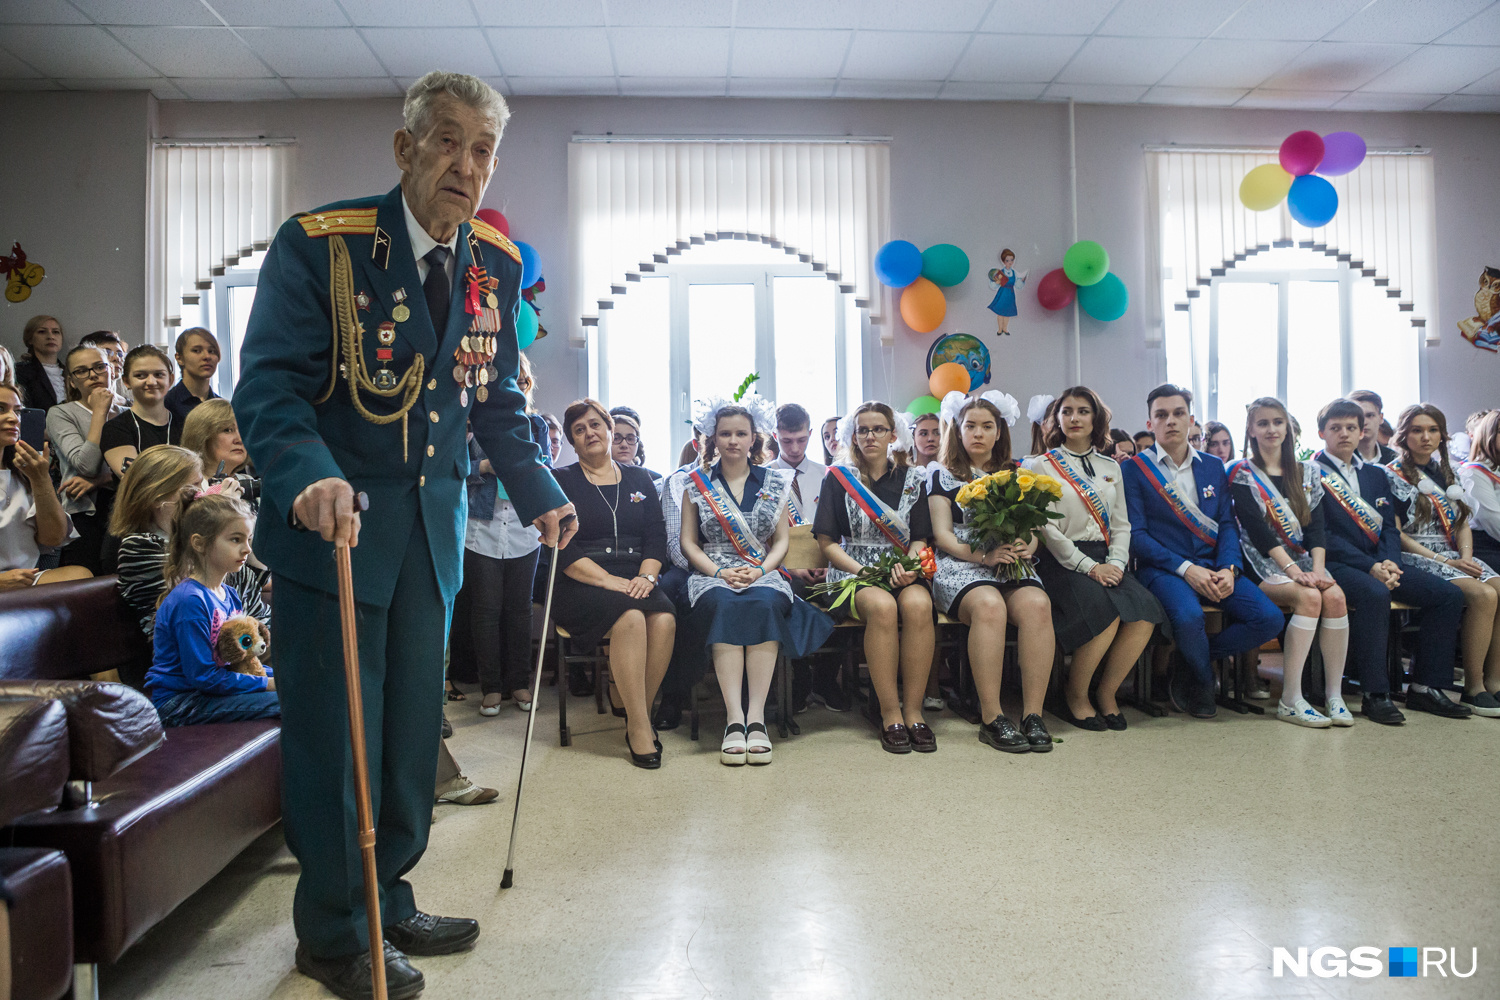 Выпускников поздравляет ветеран. Фото Ольги Бурлаковой